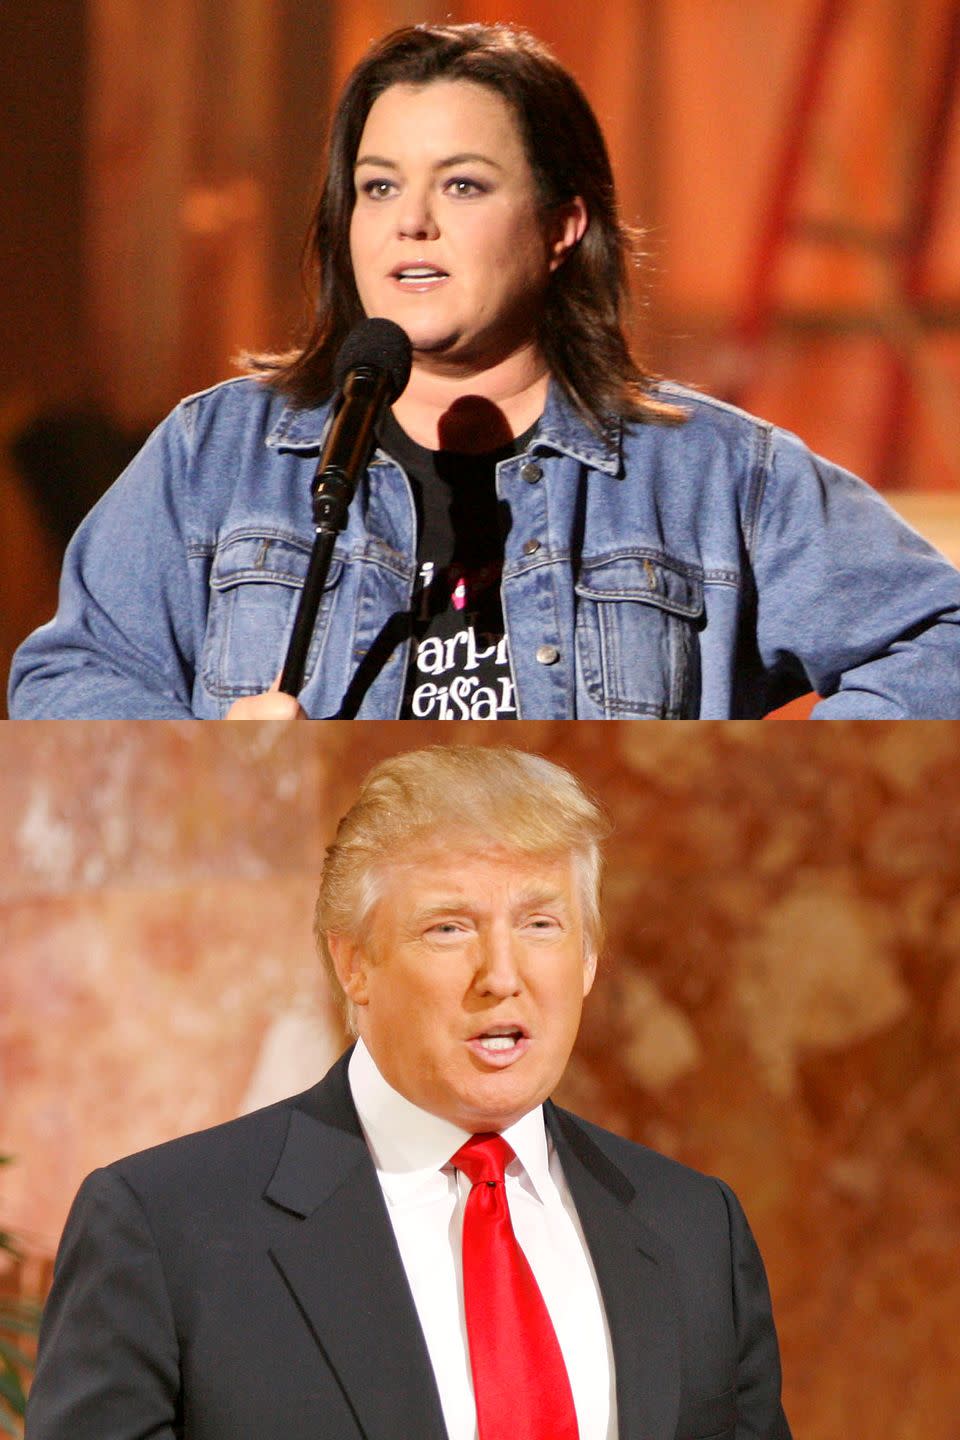 2006: Rosie O’Donnell vs. Donald Trump